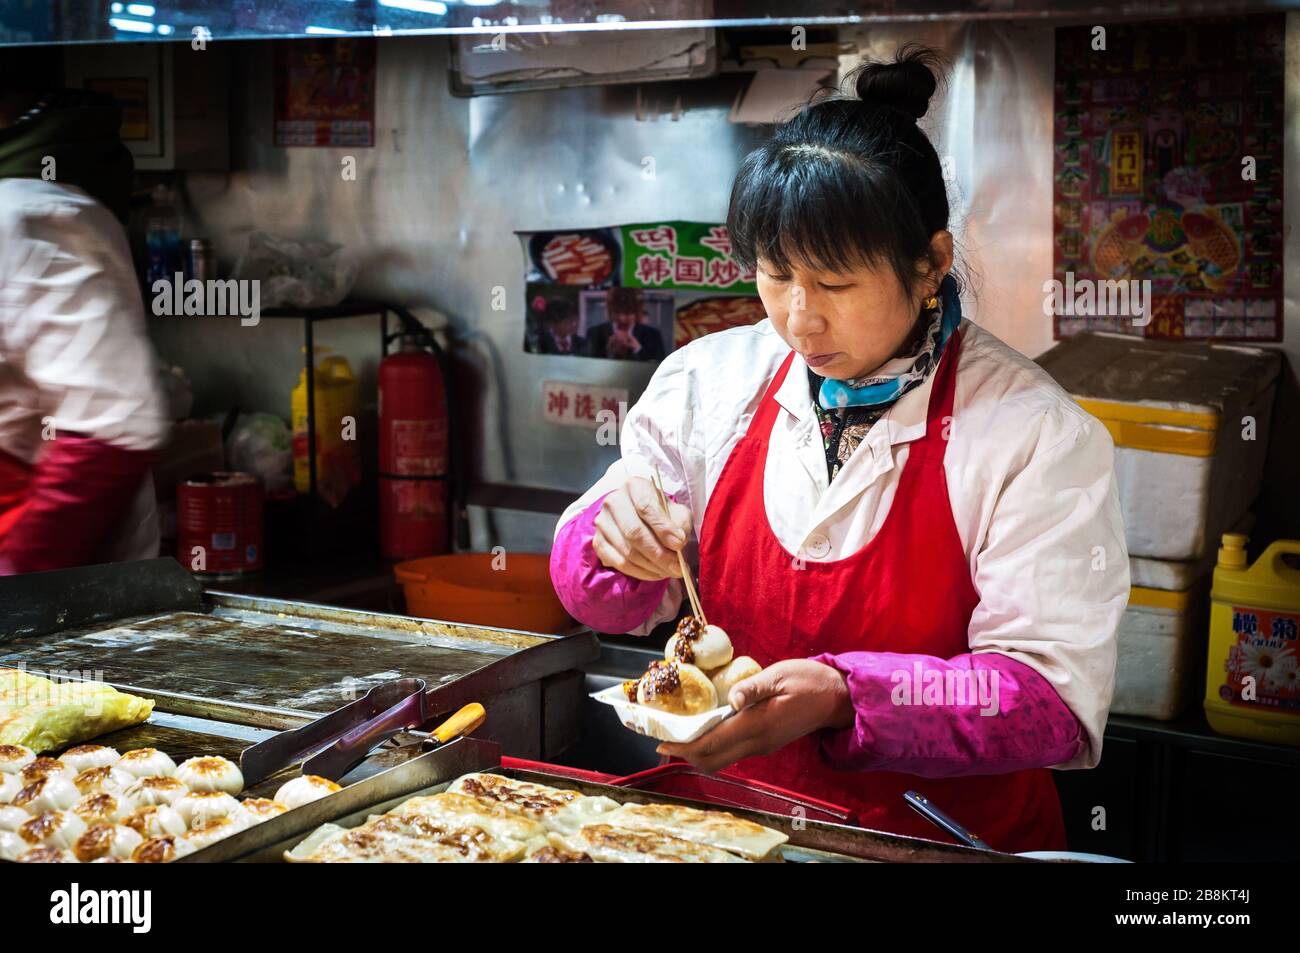 WANGFUJING NIGHT MARKET, BEIJING - DEC 25, 2013 - Female vendor serving fried pork buns at Wangfujing snack street, Beijing Stock Photo